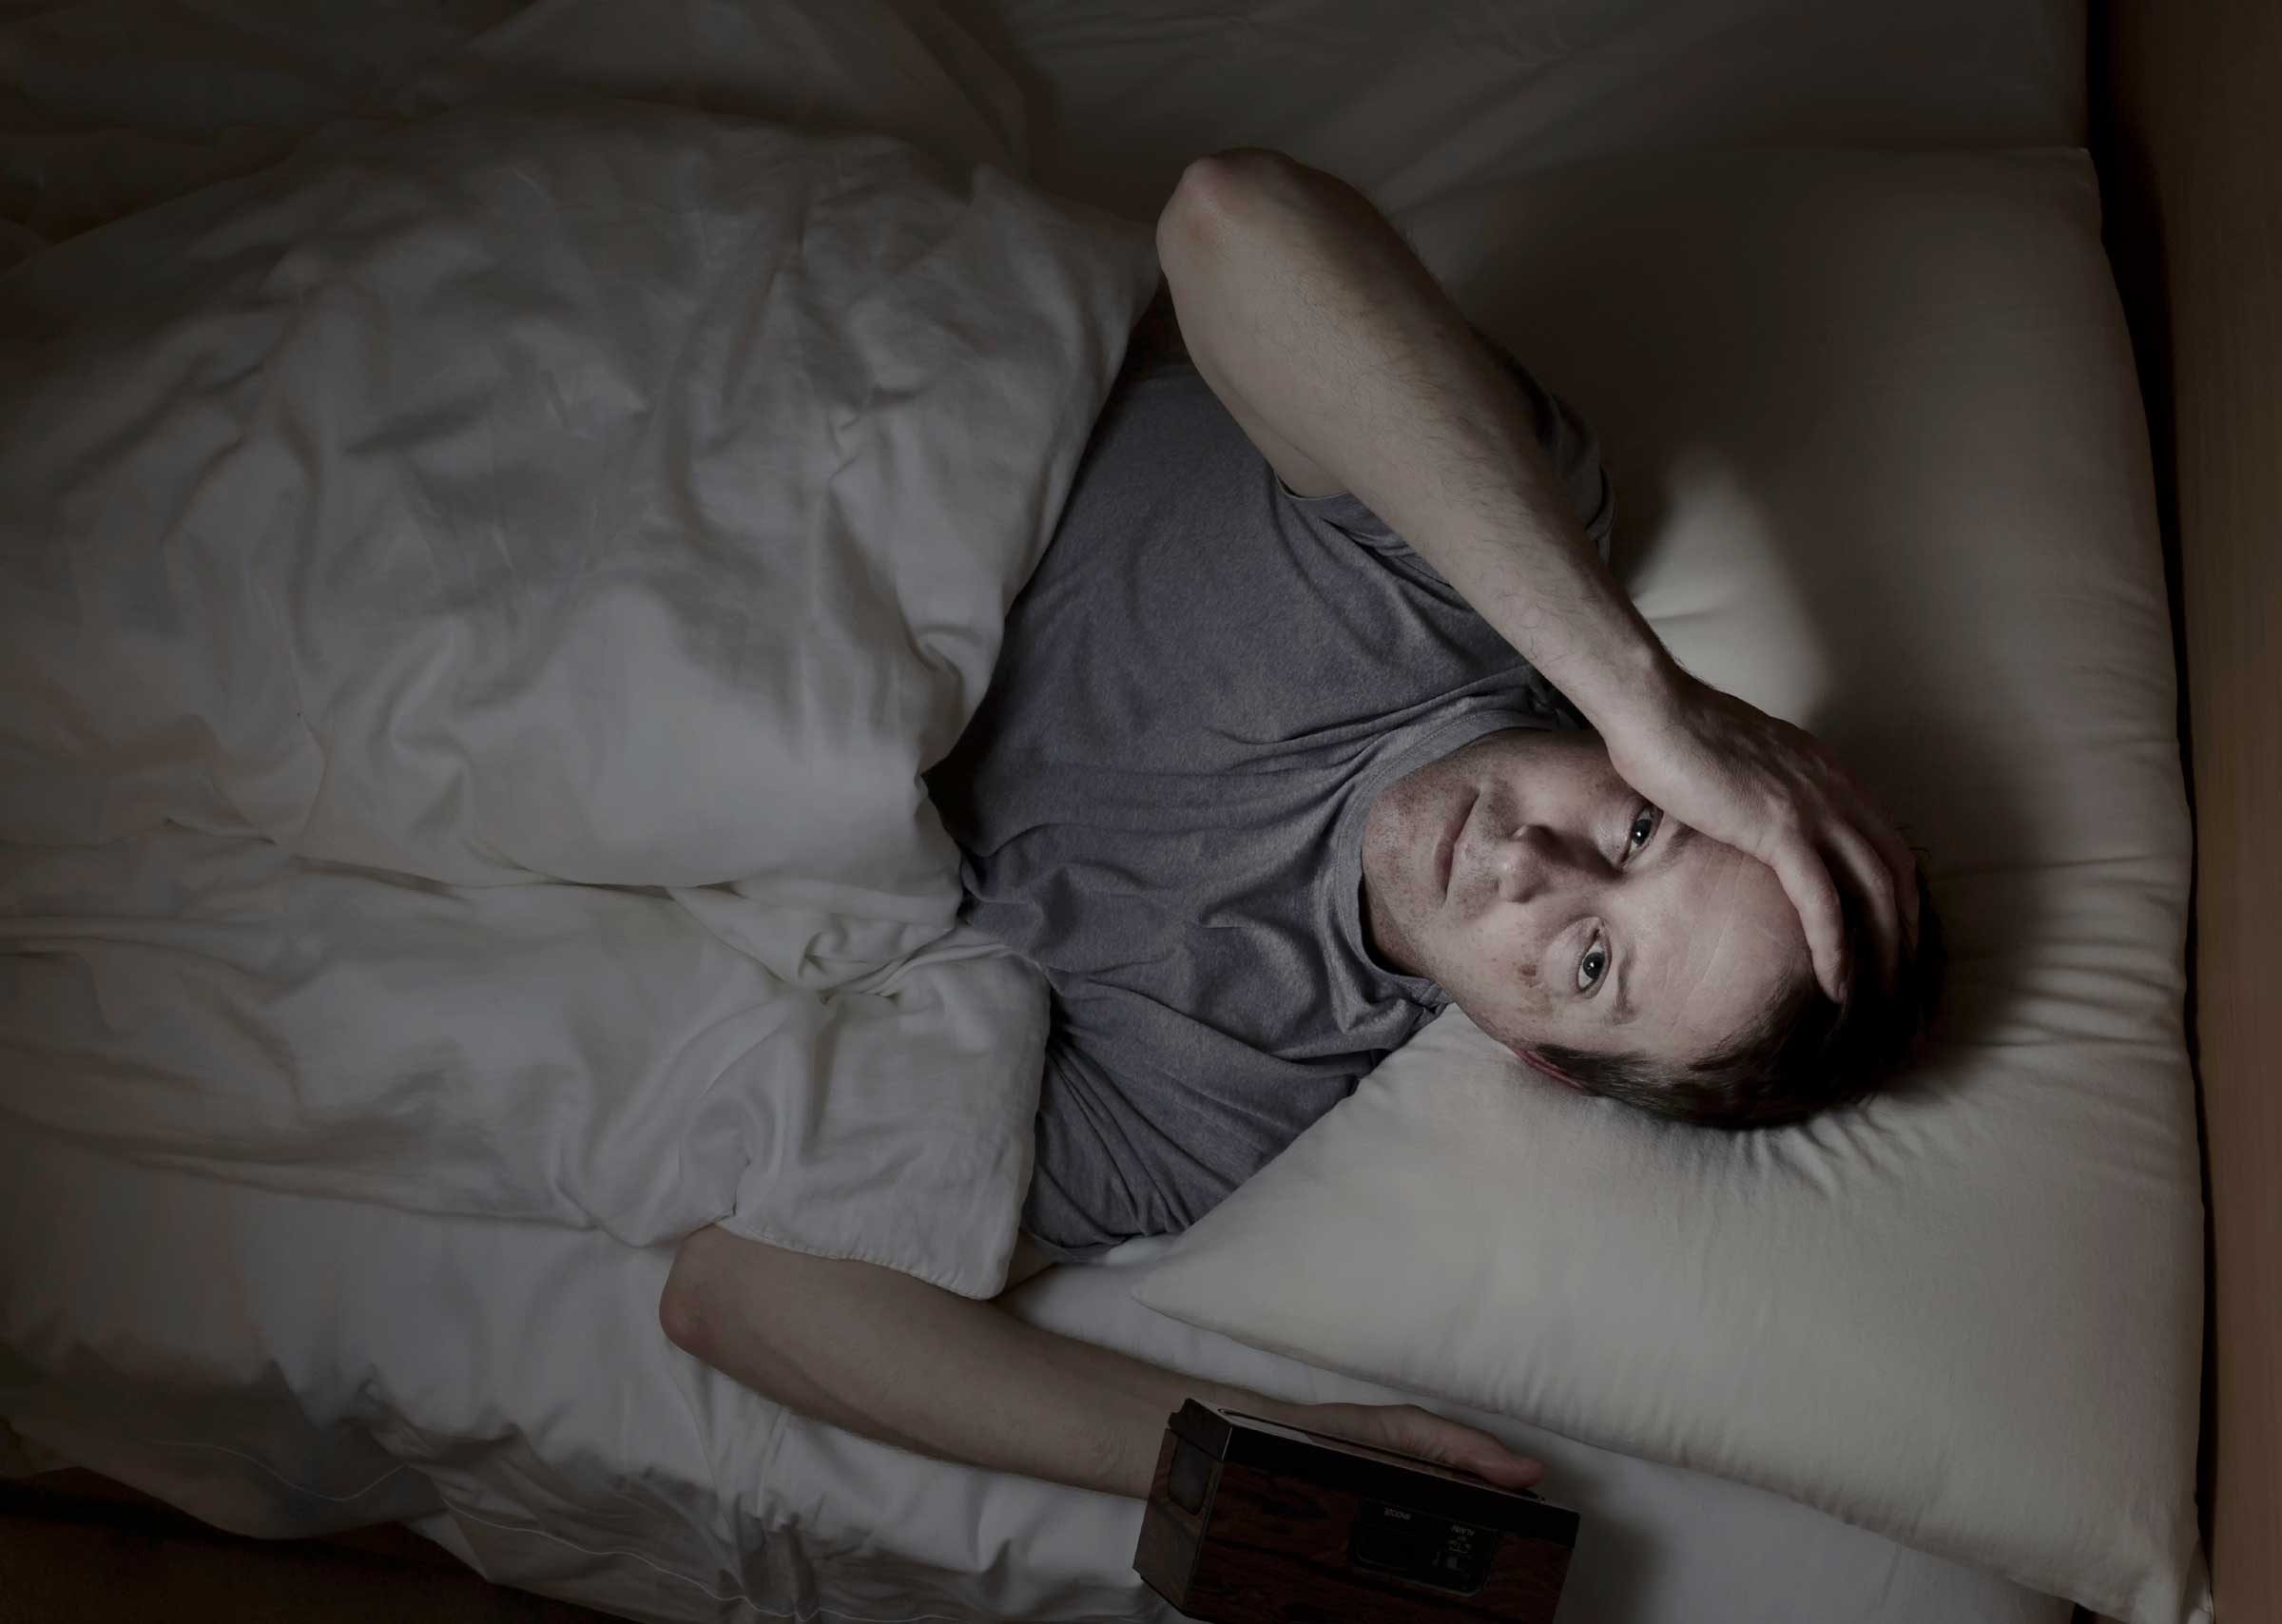 07 bad habits insomnia awake in bed